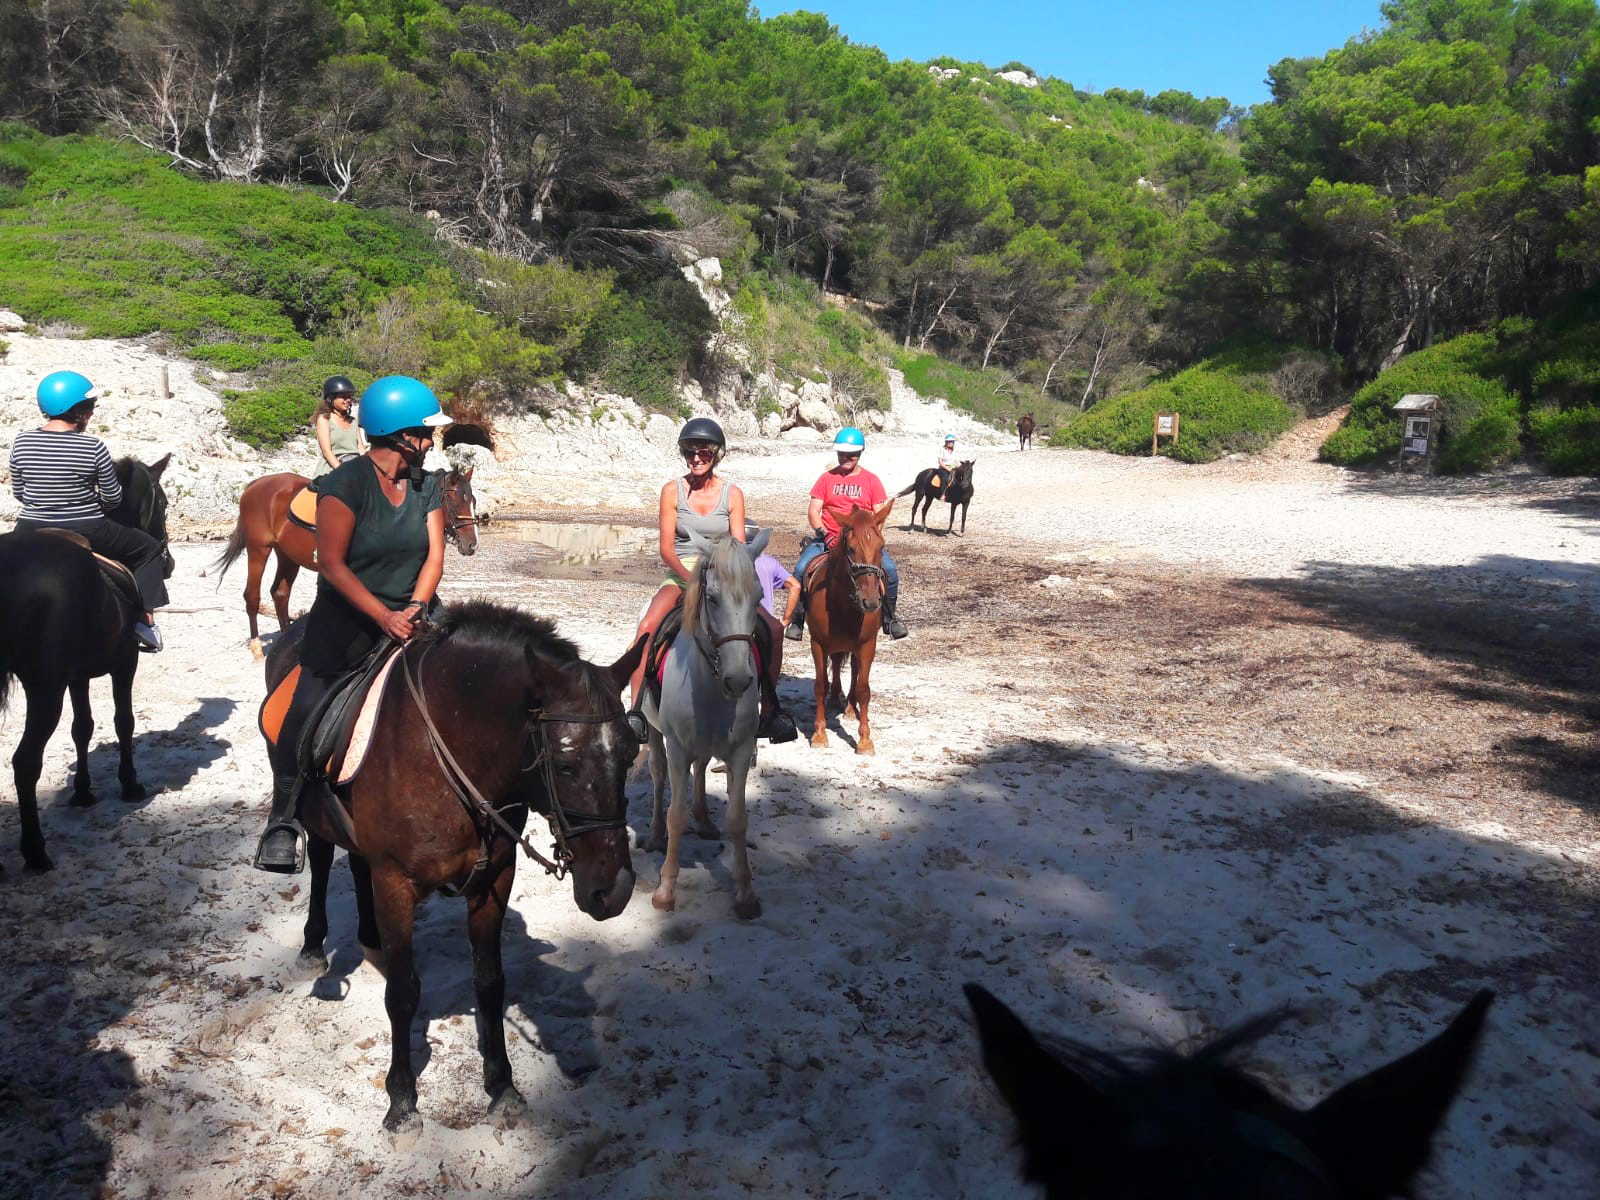 Montar a caballo en Menorca